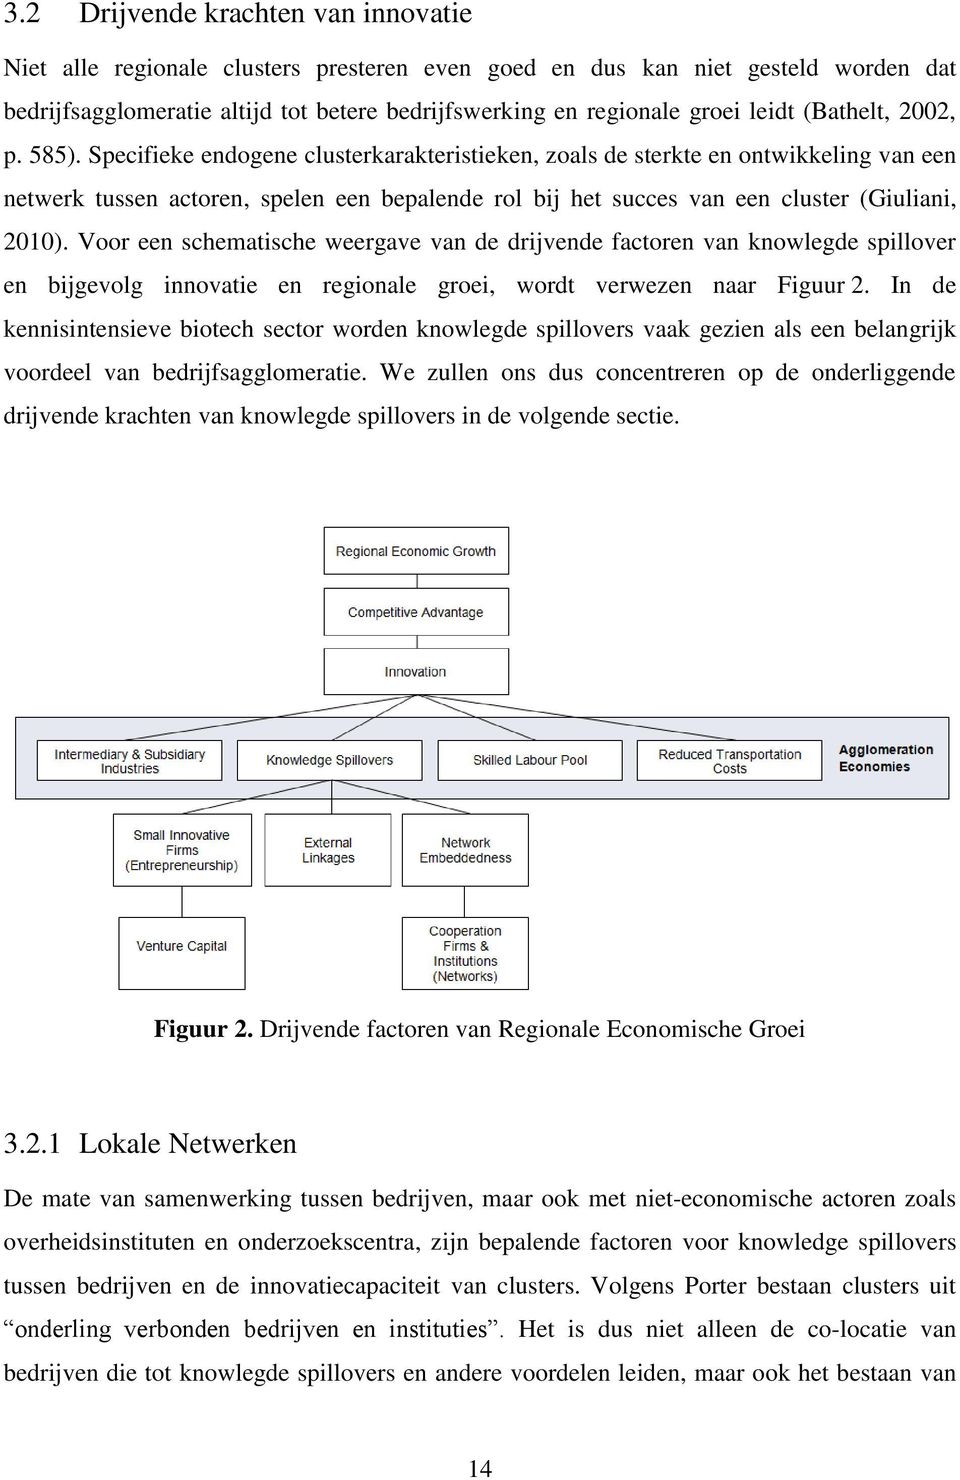 Specifieke endogene clusterkarakteristieken, zoals de sterkte en ontwikkeling van een netwerk tussen actoren, spelen een bepalende rol bij het succes van een cluster (Giuliani, 2010).